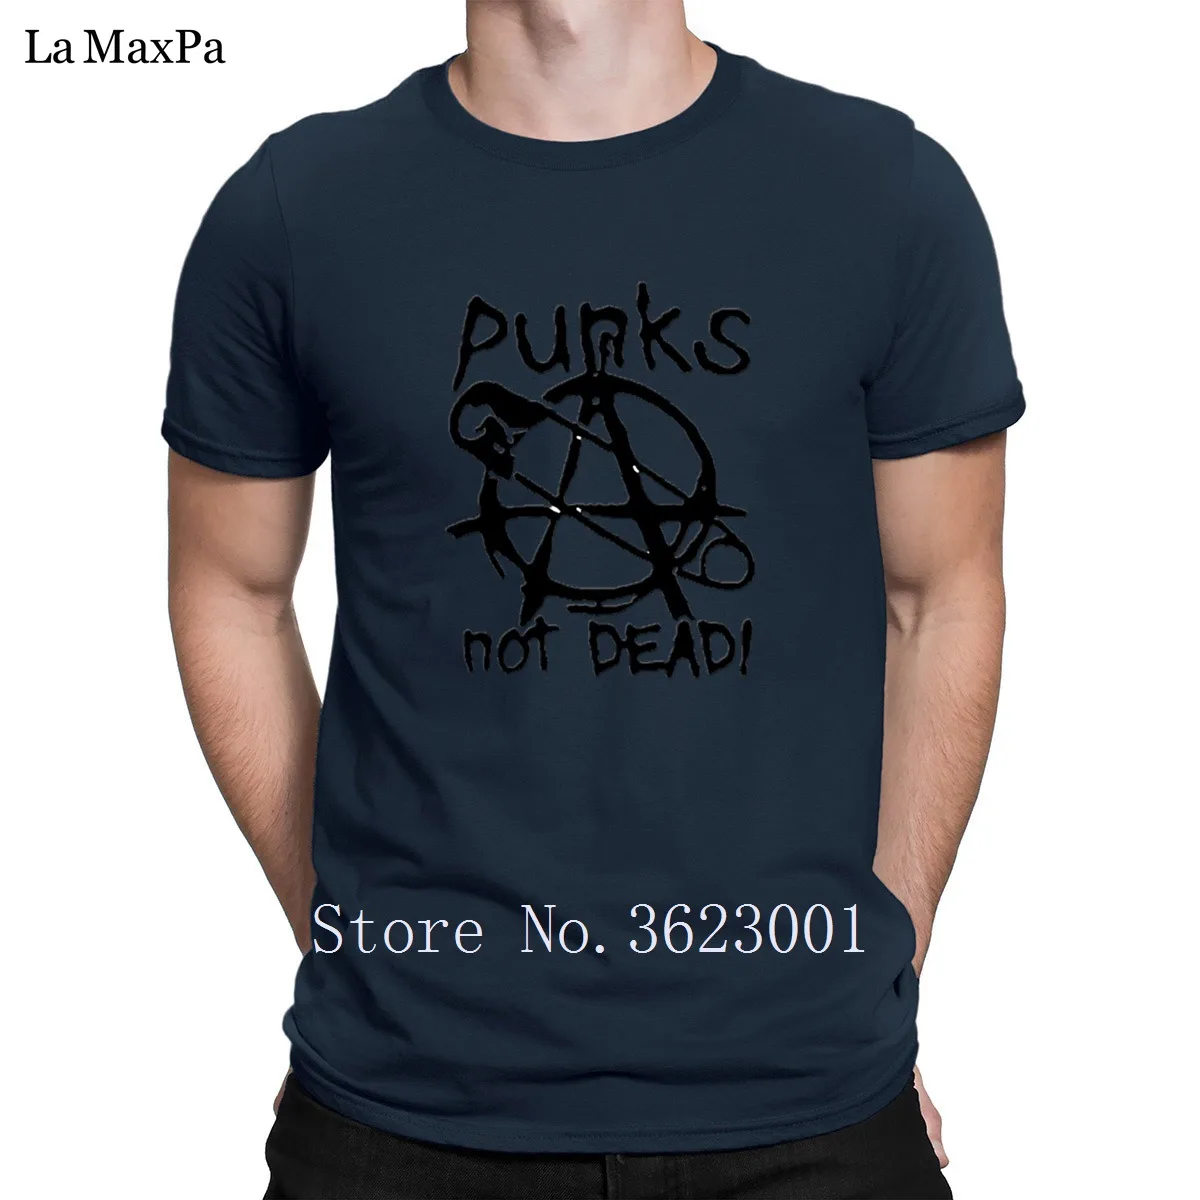 Новое поступление, креативная Мужская футболка с надписью Punks Not Dead, Мужская футболка унисекс, Мужская футболка с надписью, хлопок, высокое качество